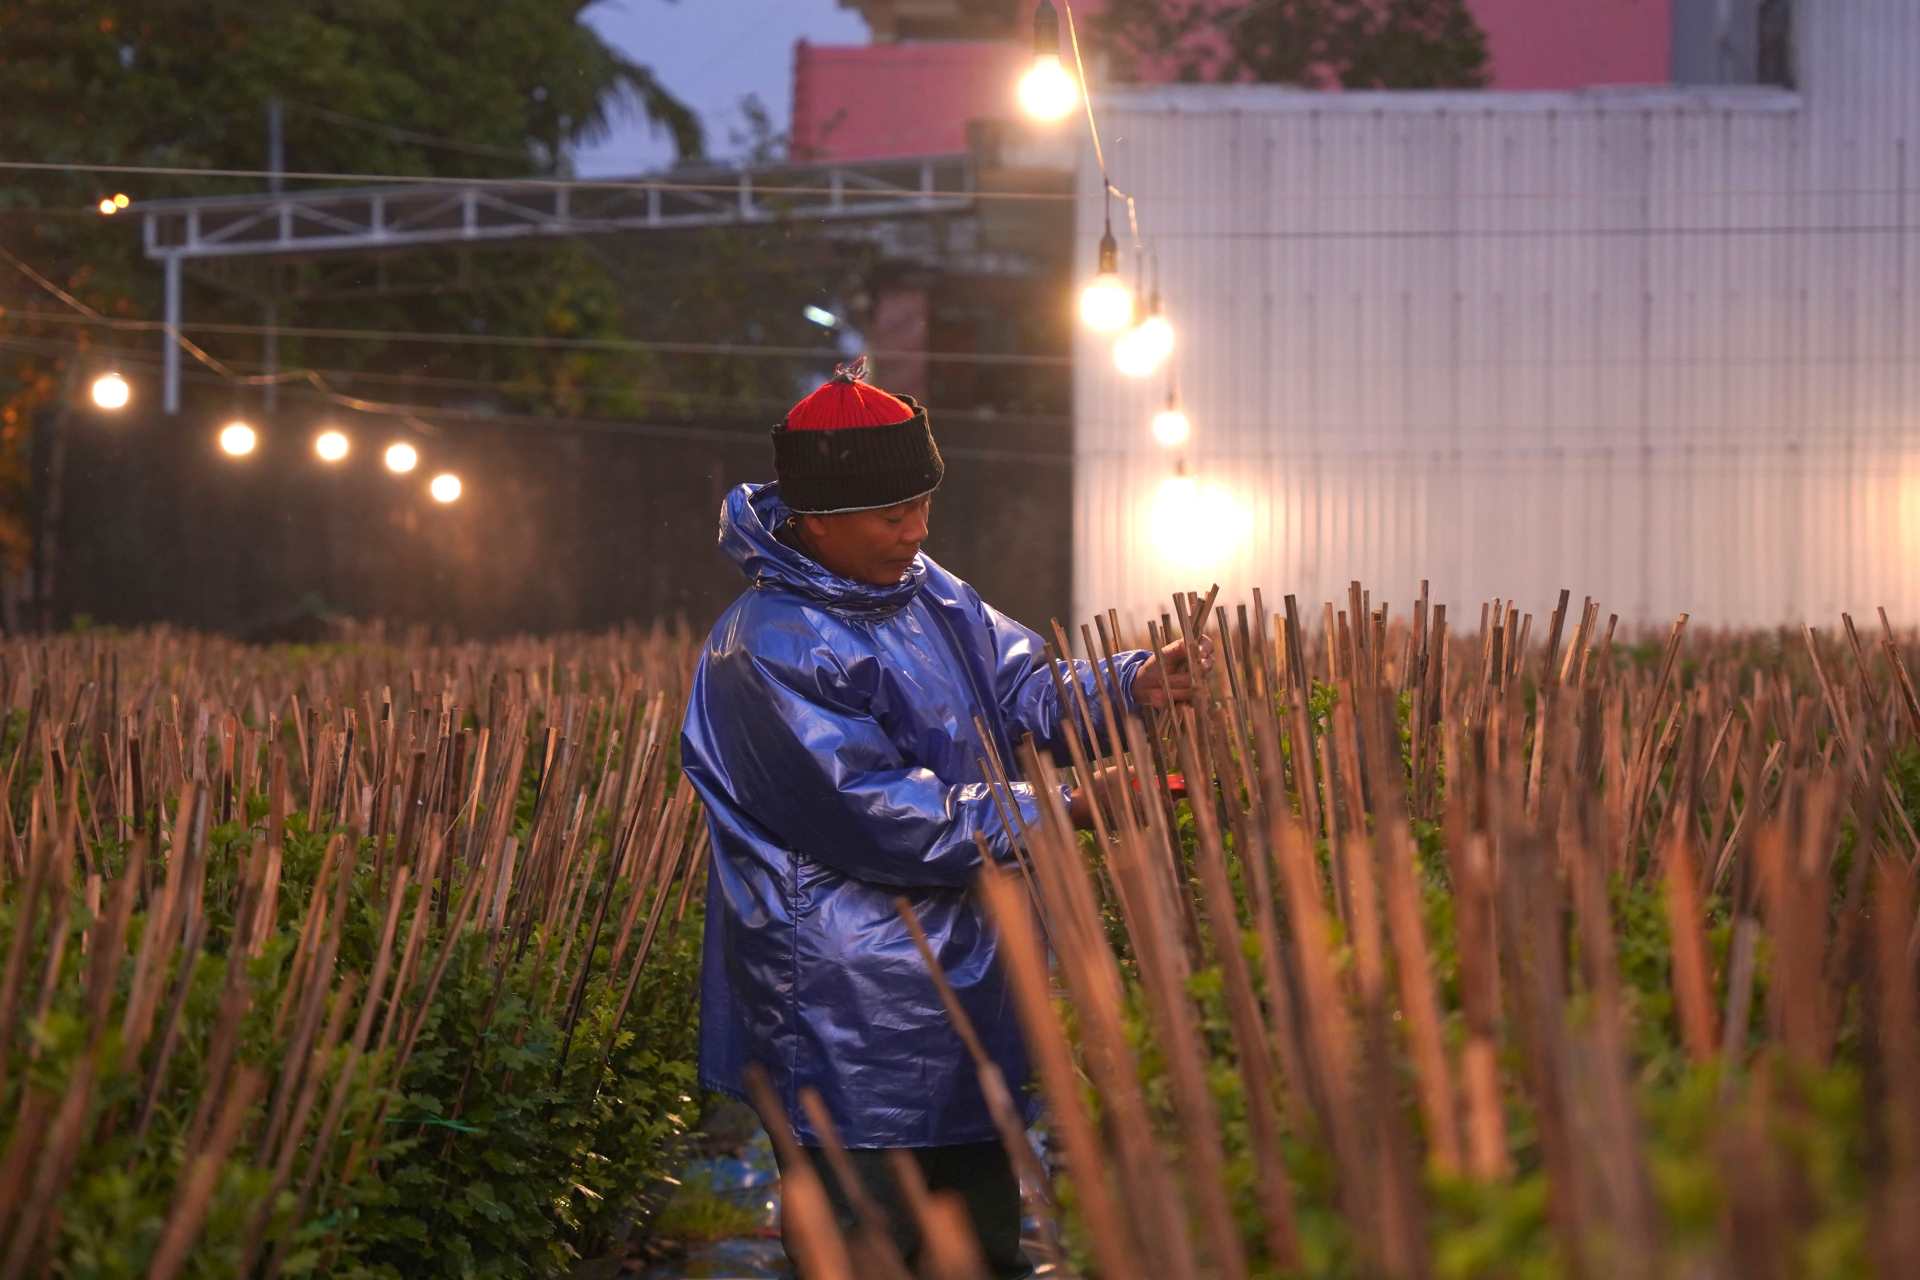 Theo anh Nguyễn Ngọc Phụng, một nông dân trồng hoa tại địa phương này cho biết, việc thắp đèn cho hoa sẽ bắt đầu từ tháng 7 ÂL (lúc gieo giống) cho đến khi cây hoa cứng cáp, giai đoạn sẽ rơi vào khoảng tháng 11. 